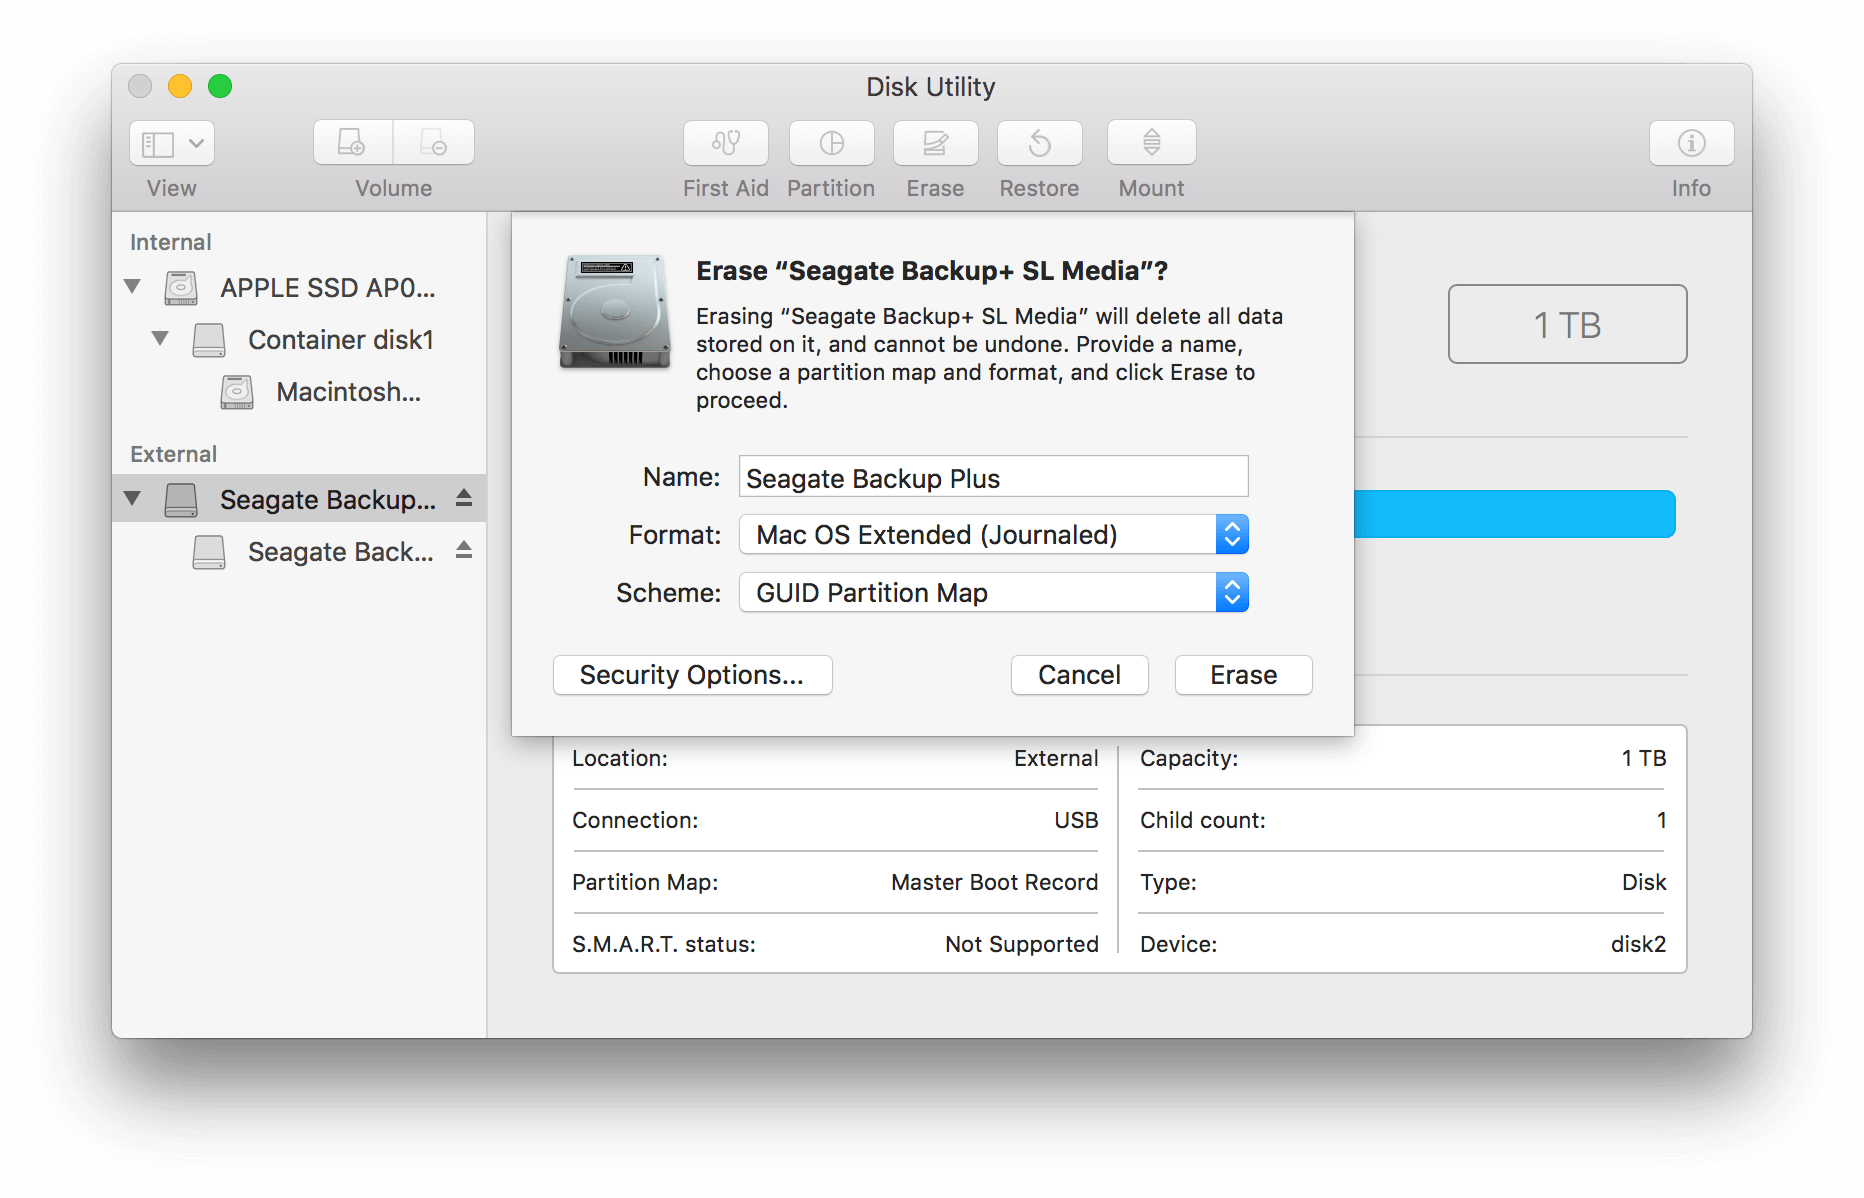 Schließen Sie die externe Festplatte ab und fahren Sie den Mac herunter.
Warten Sie einige Minuten und starten Sie dann sowohl den Mac als auch die externe Festplatte neu.